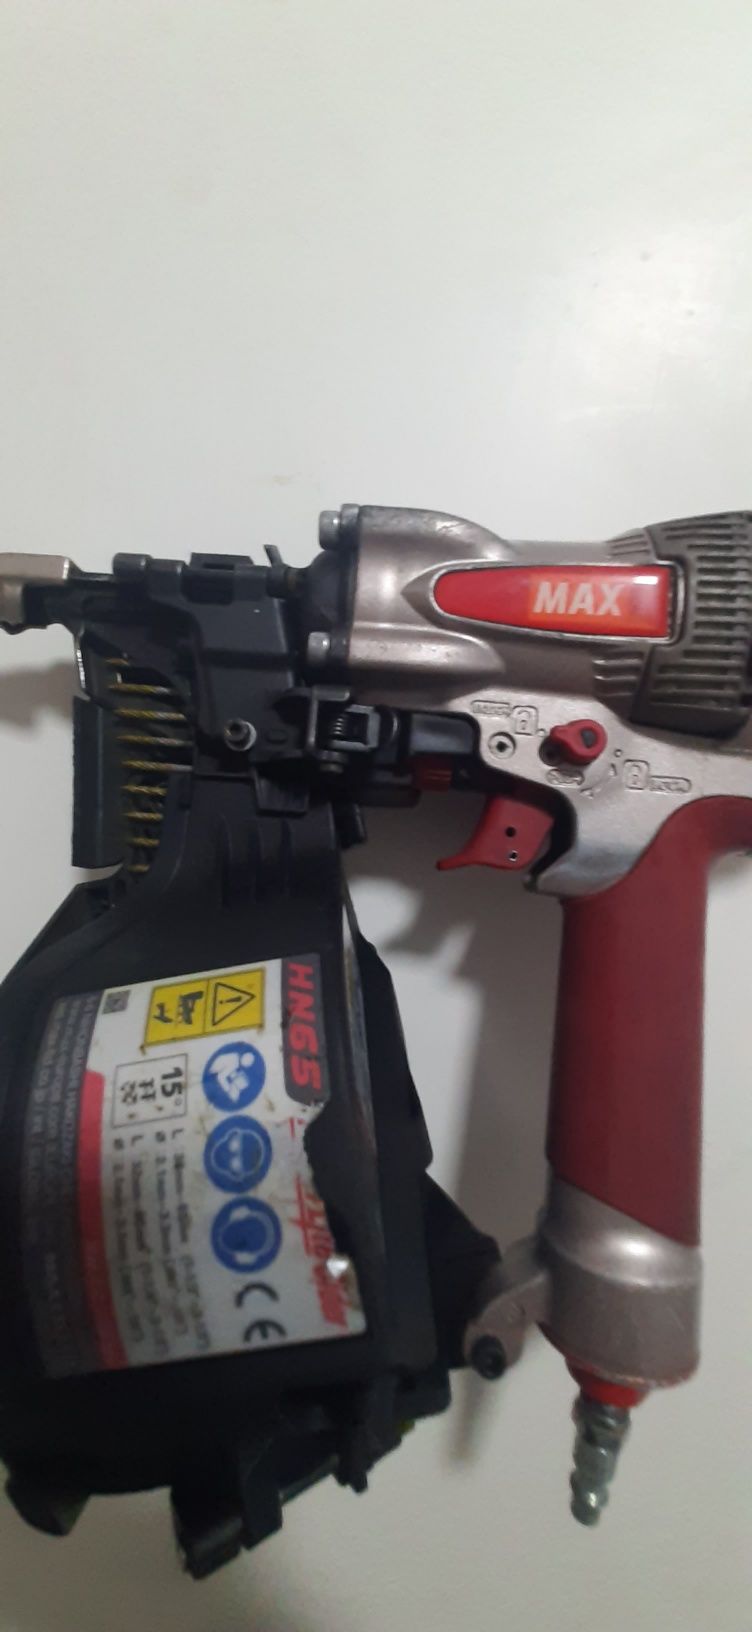 Pistol max HN 65